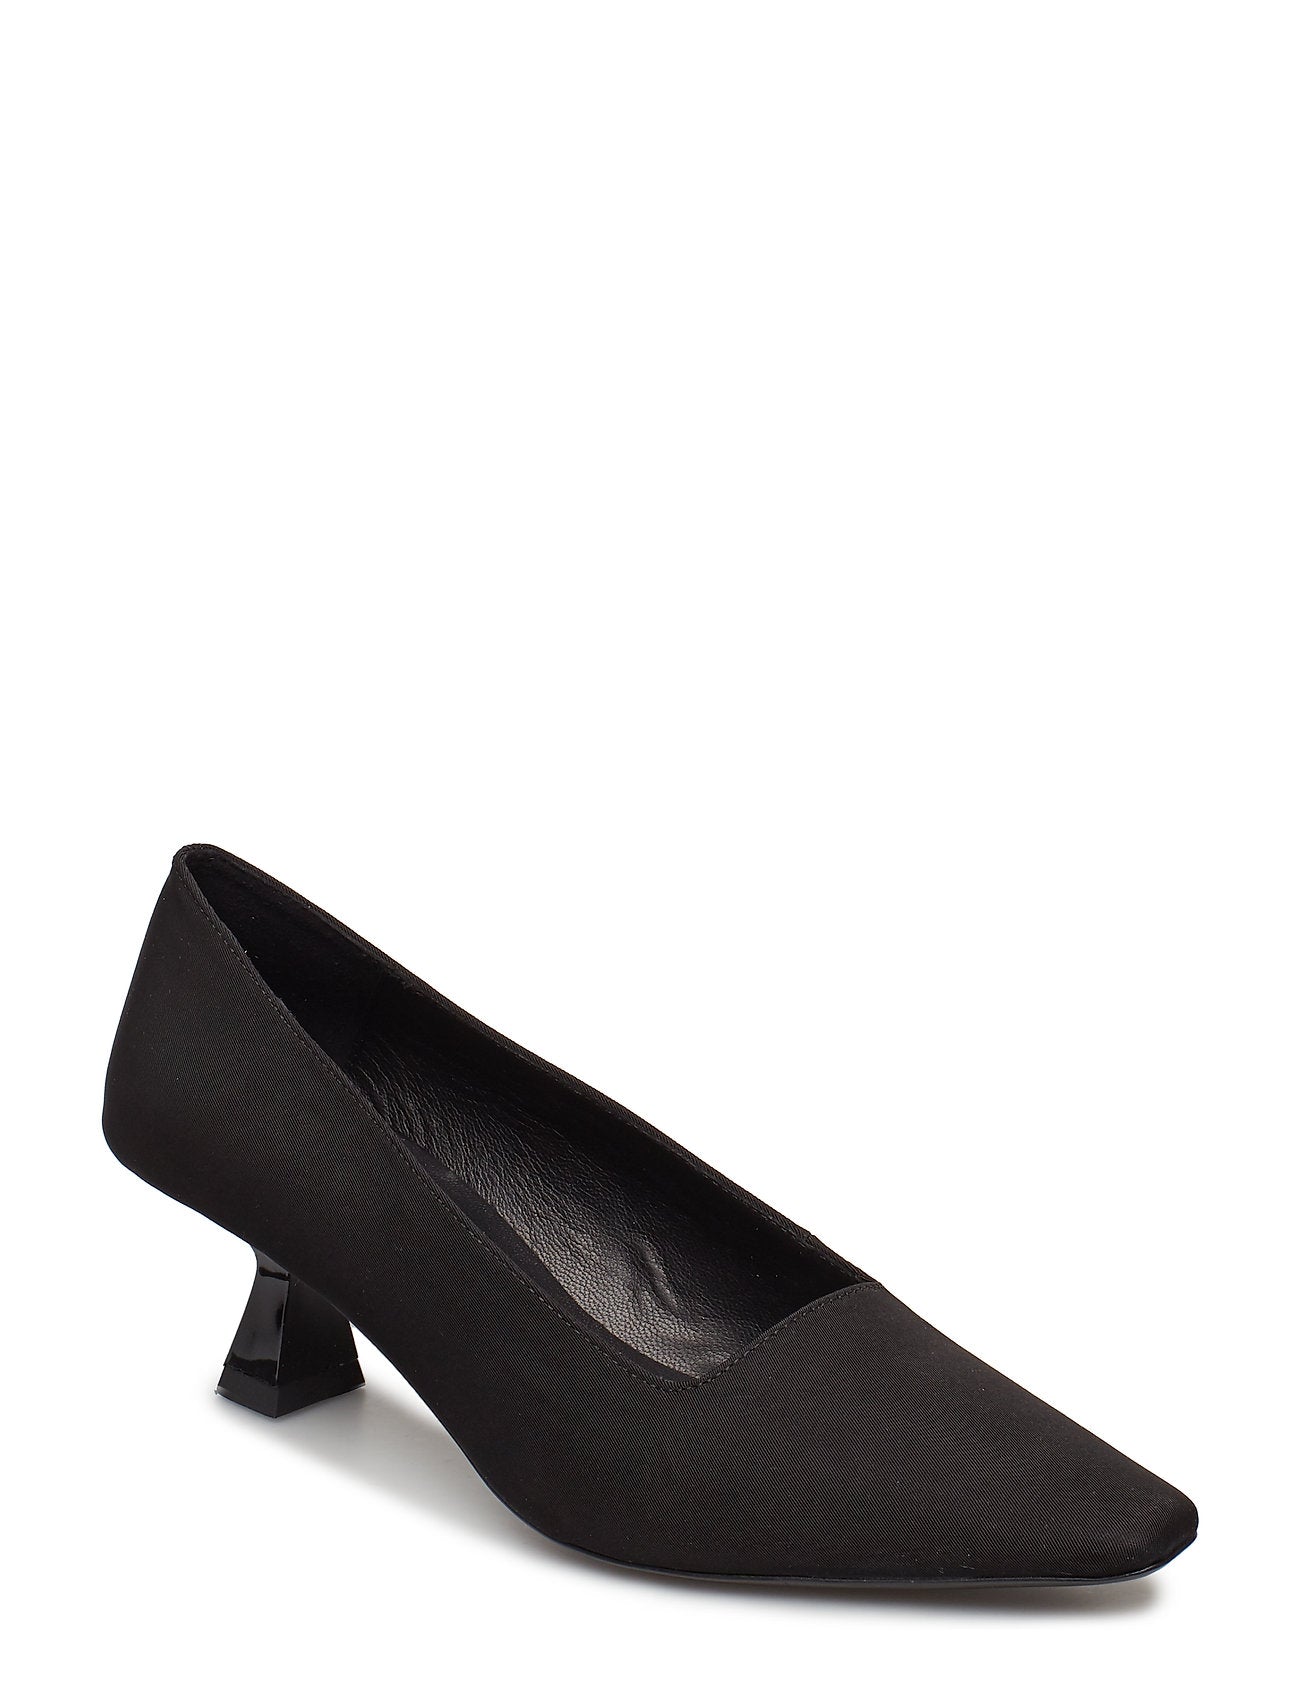 LISSIE Black Heeled Pump - Imeldas Shoes Norwich